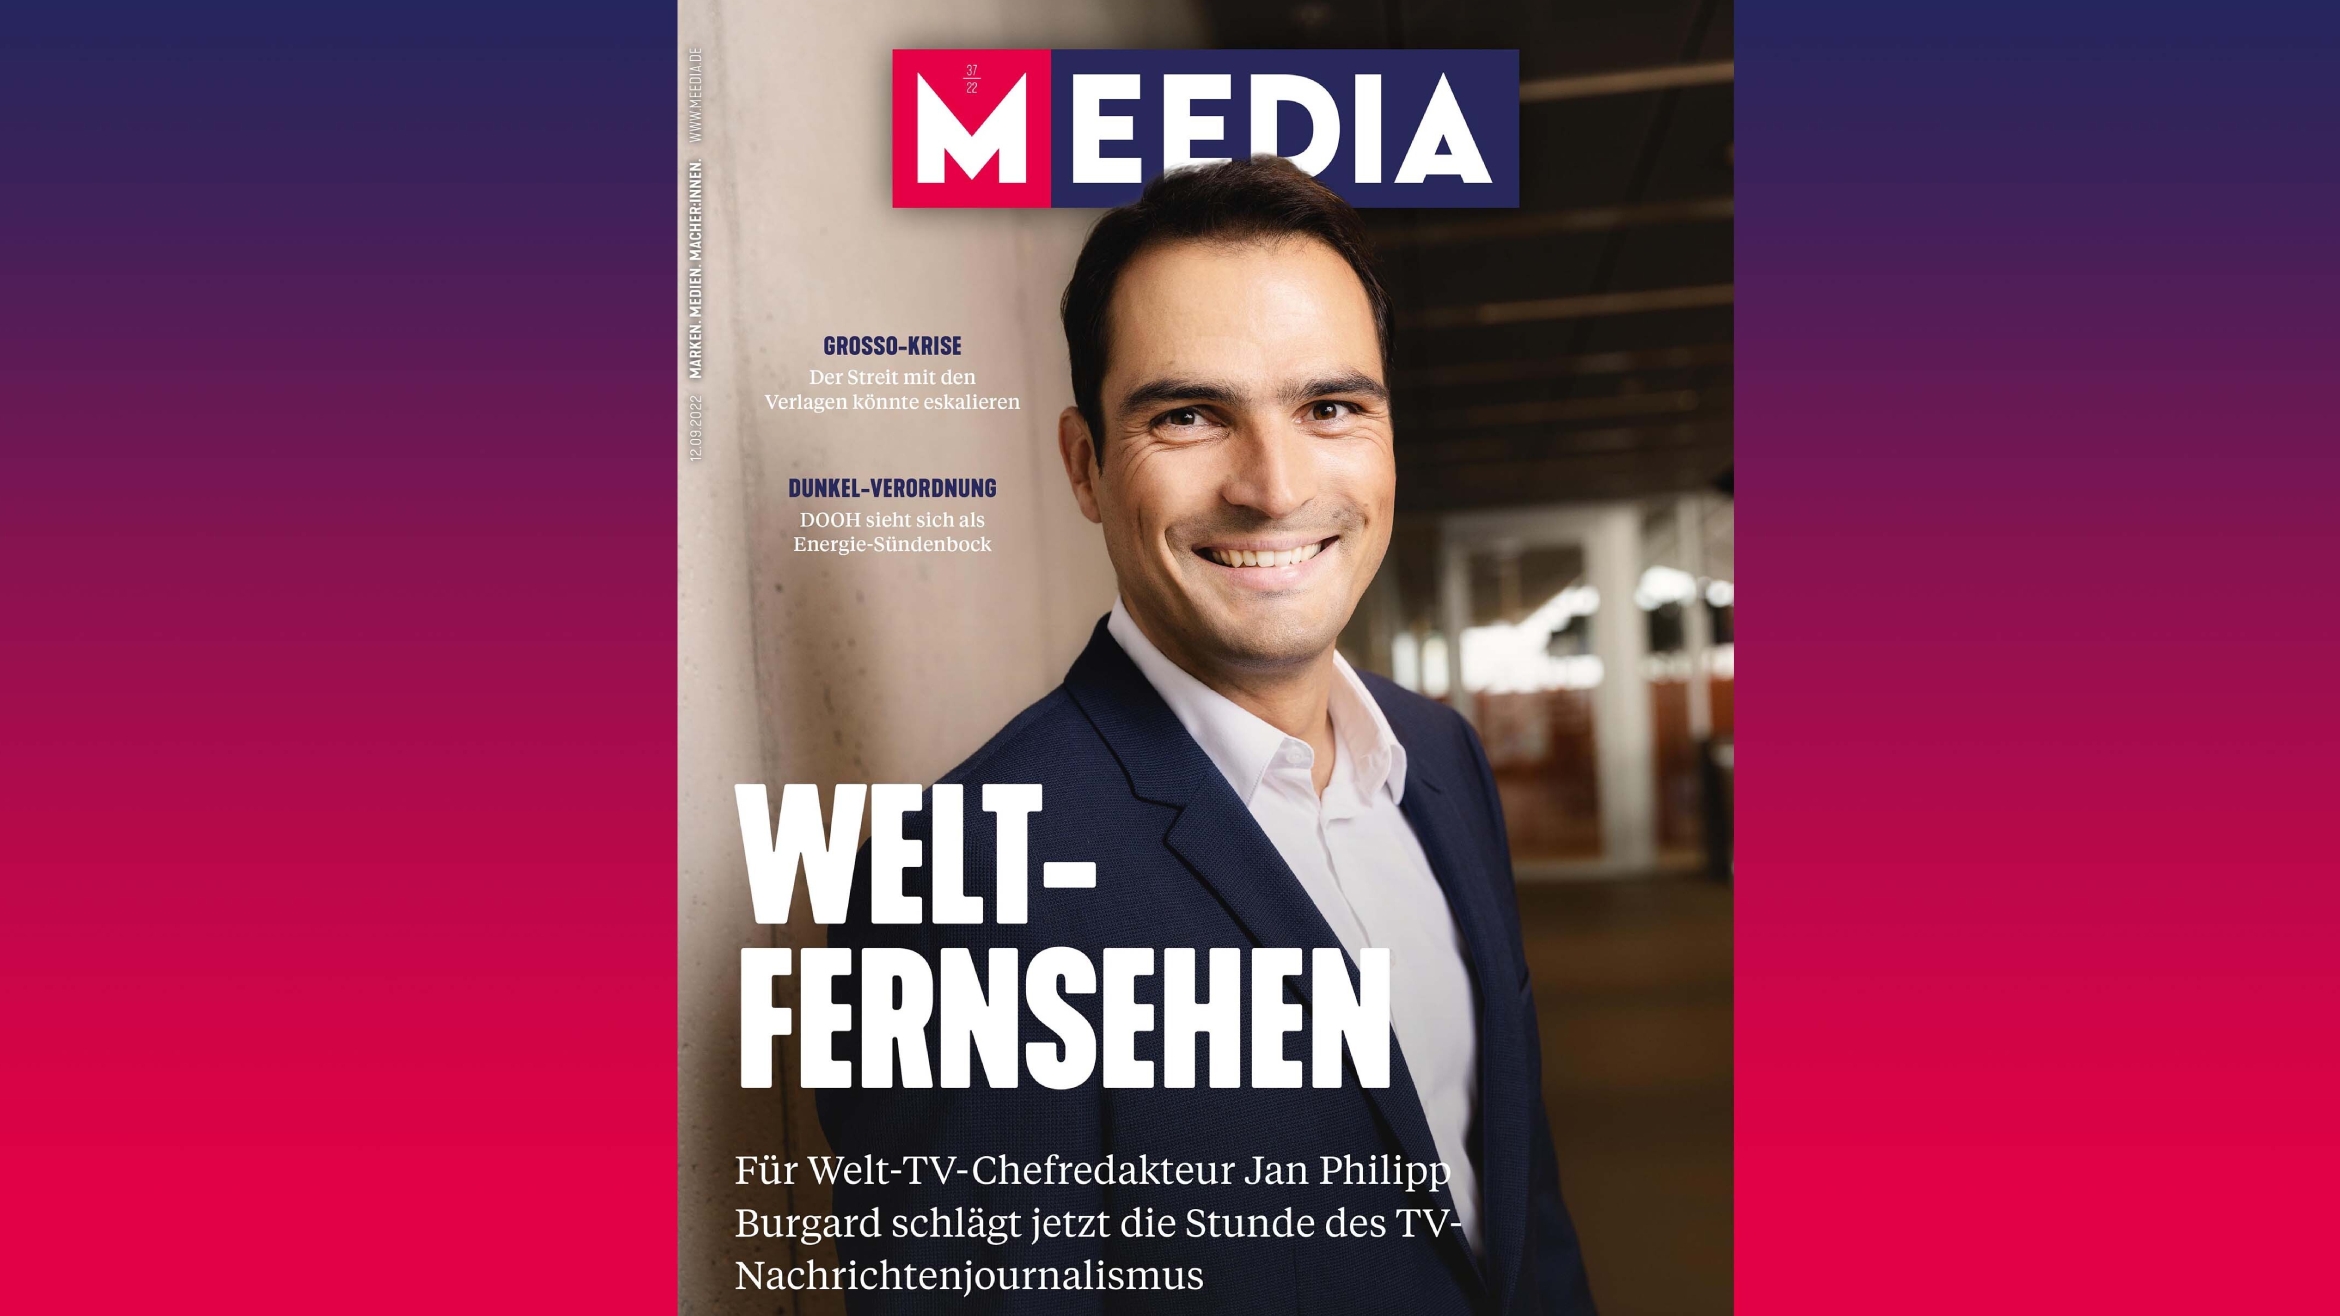 Jan Philipp Burgard, Chefredakteur von Welt TV, auf dem Cover der MEEDIA -